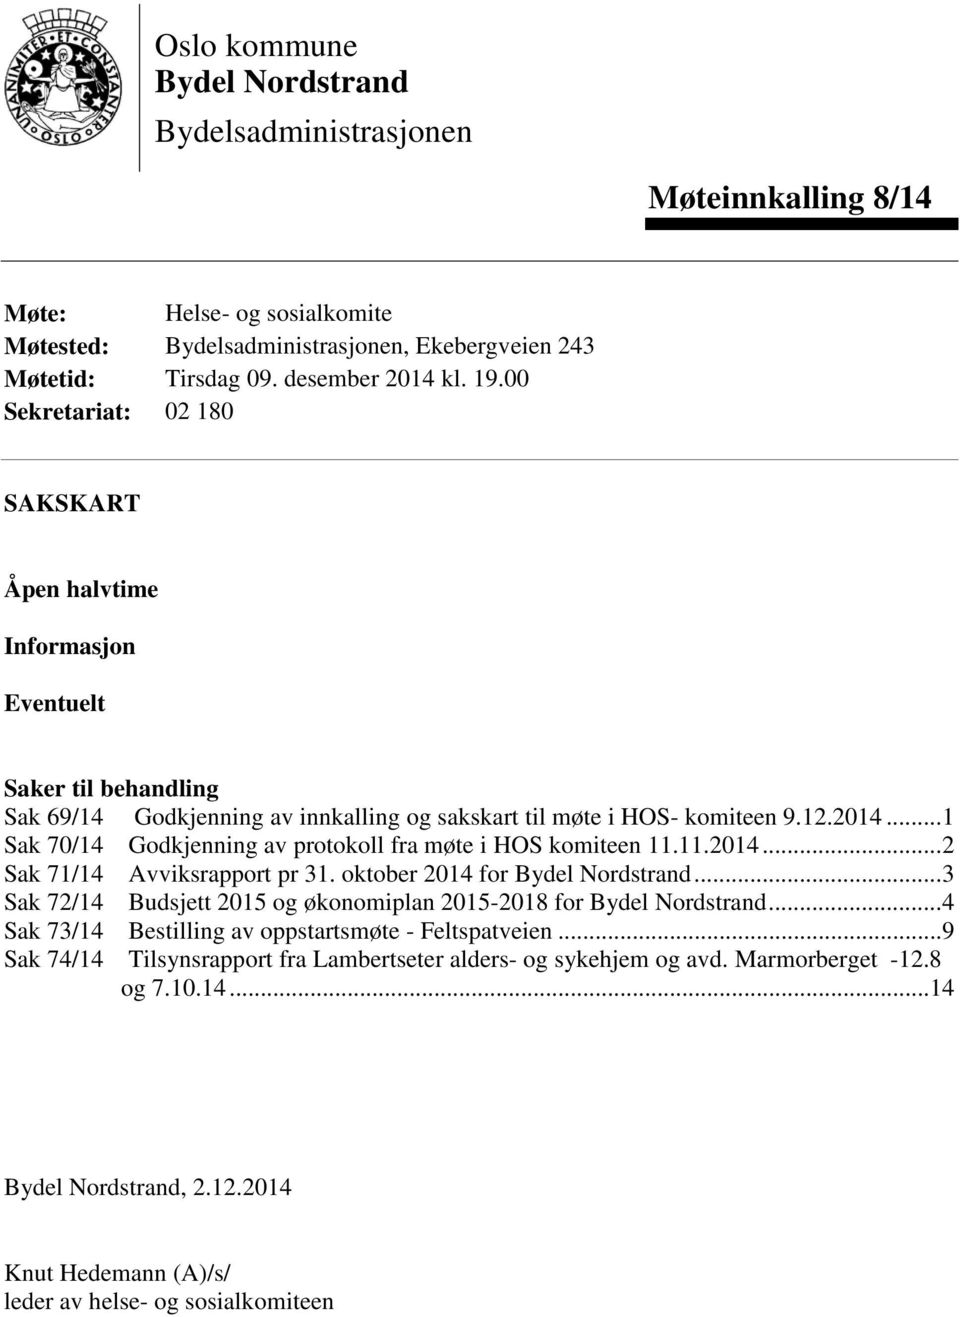 .. 1 Sak 70/14 Godkjenning av protokoll fra møte i HOS komiteen 11.11.2014... 2 Sak 71/14 Avviksrapport pr 31. oktober 2014 for Bydel Nordstrand.